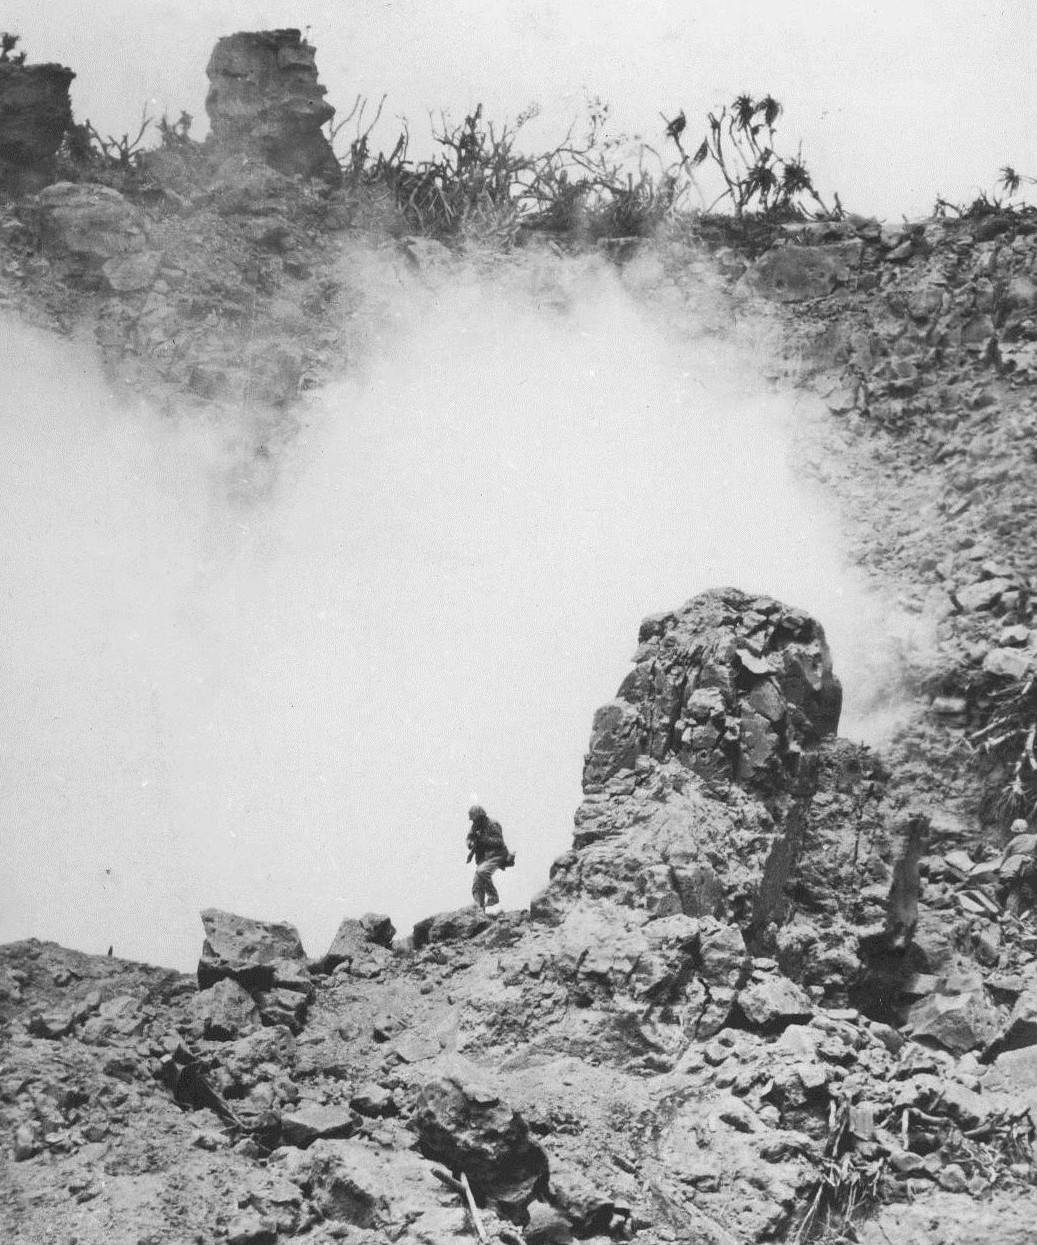 Lone US Marine in rocky terrain, Iwo Jima, Japan, Feb 1945